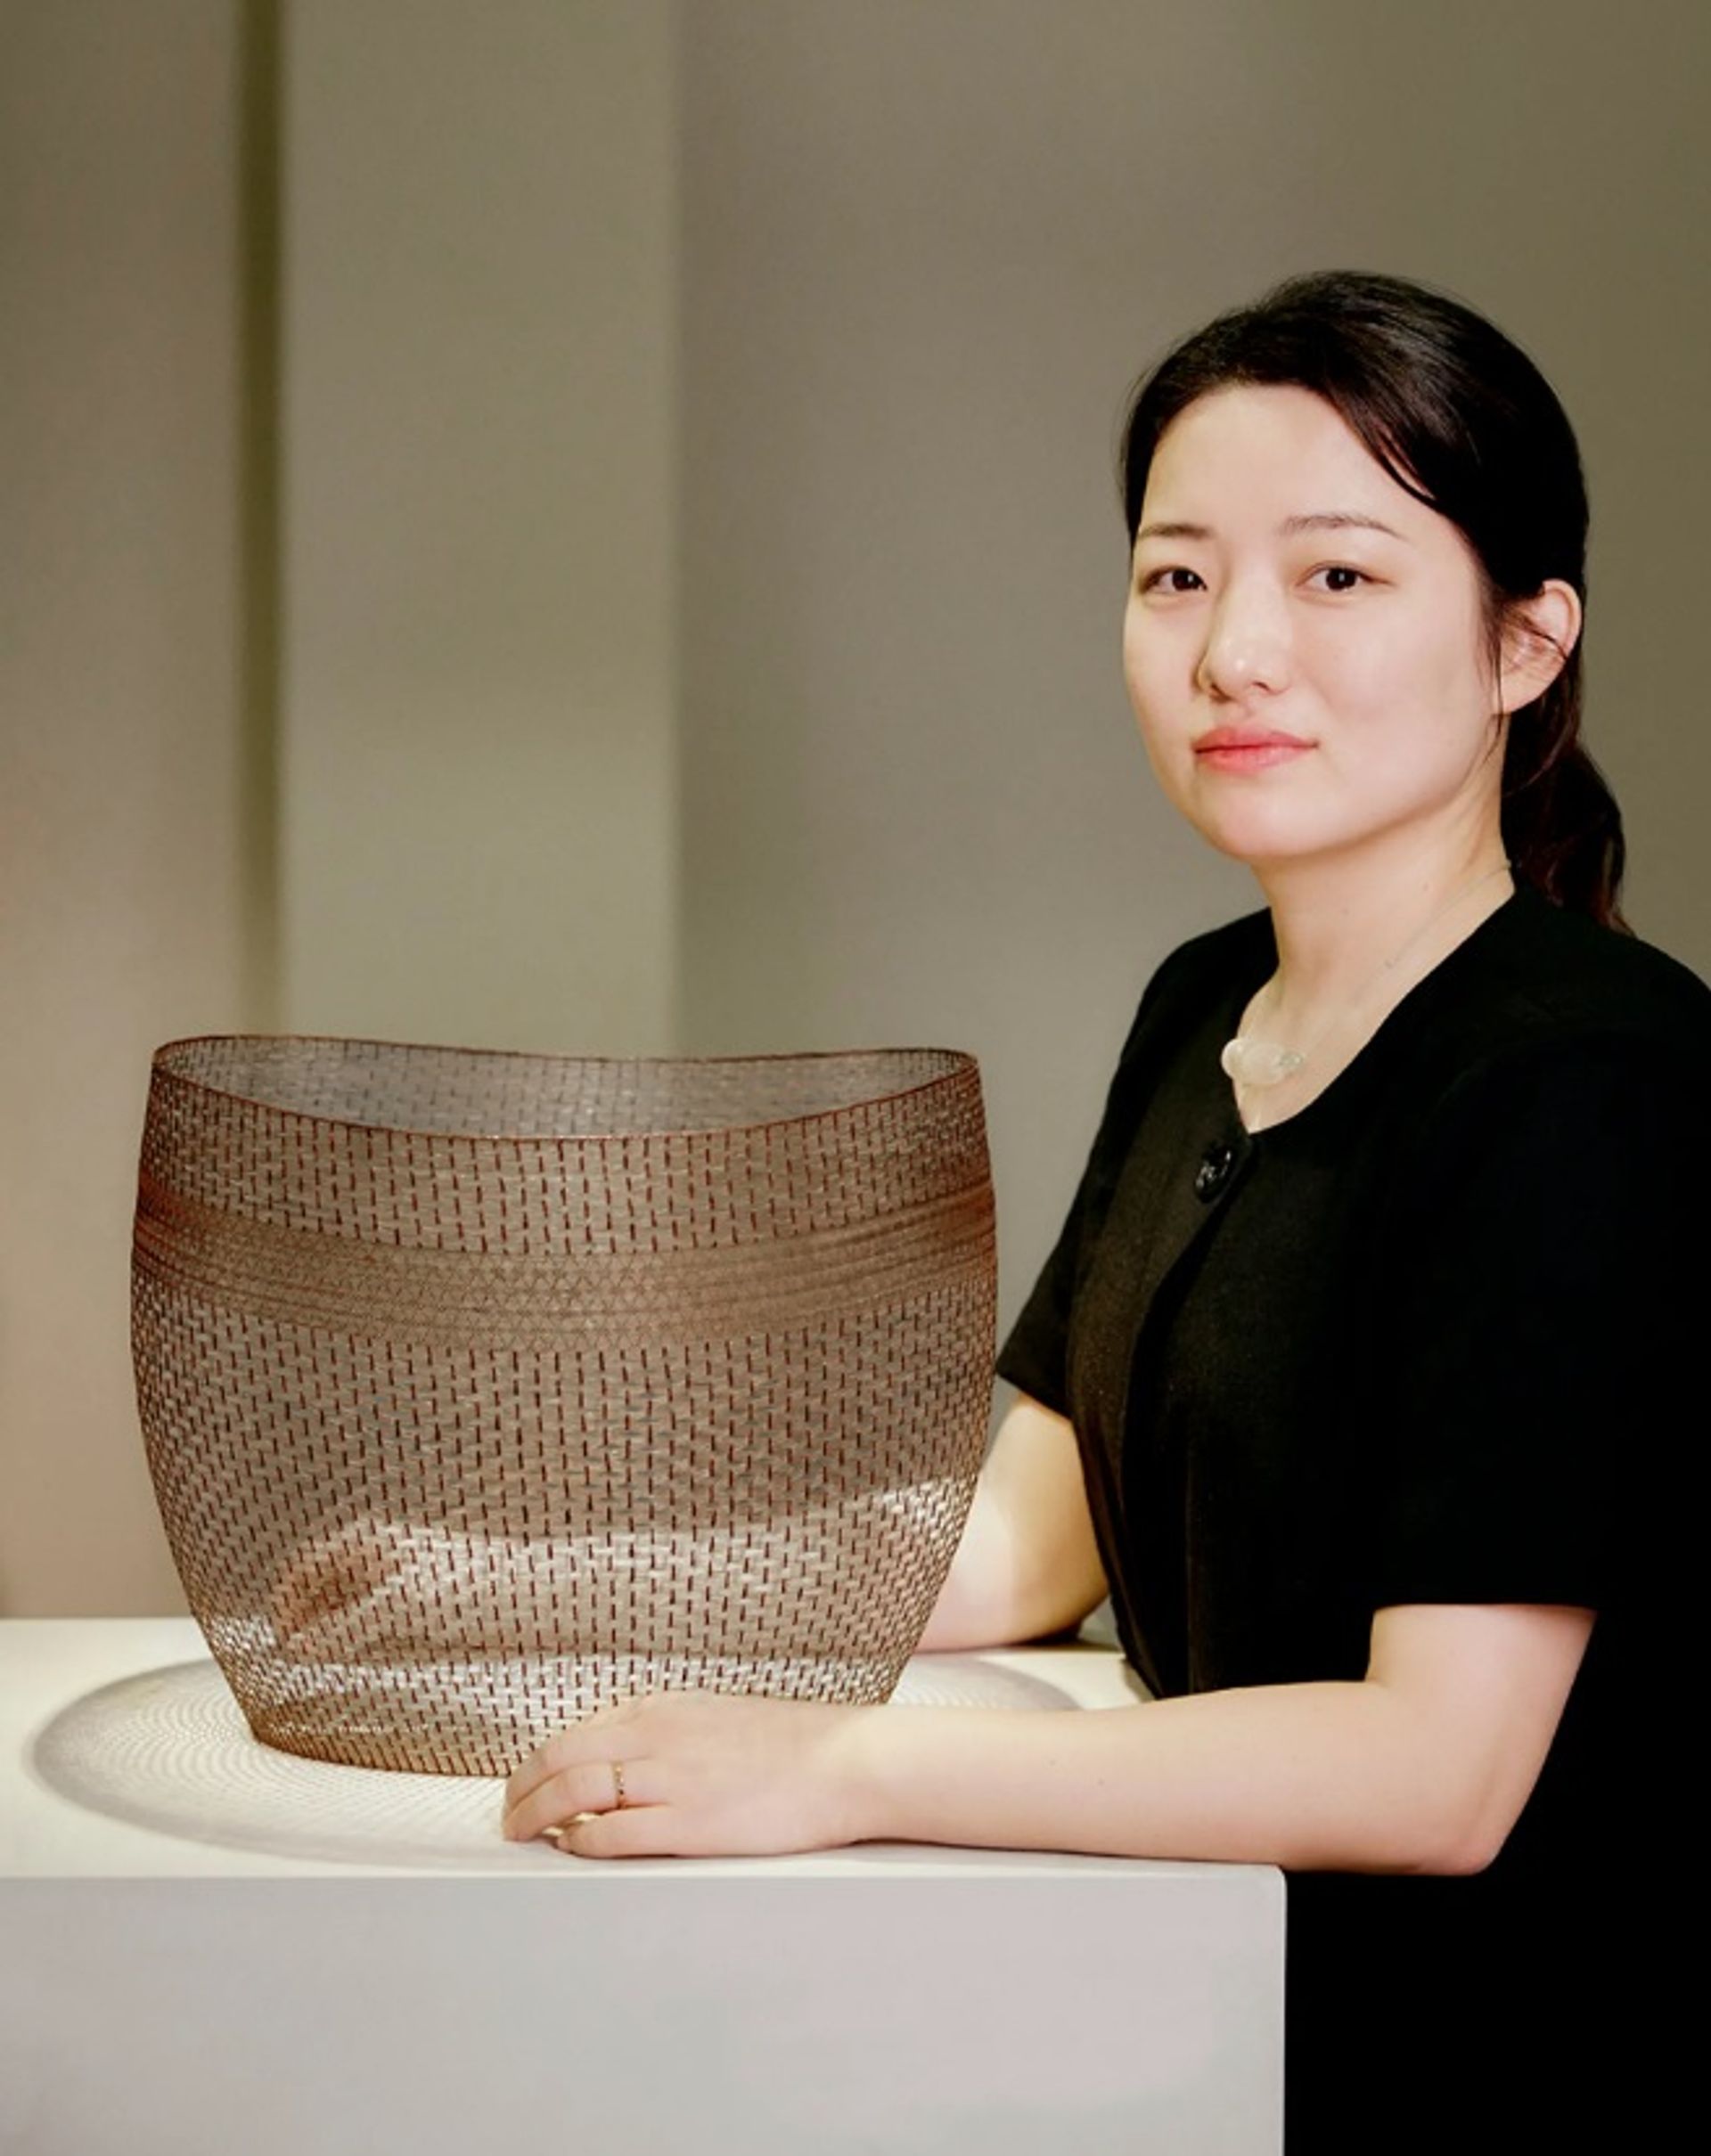 האורגת הקוריאנית דאהי ג'ונג עם עבודתה עטורת הפרסים "זמן של כנות" (2021)